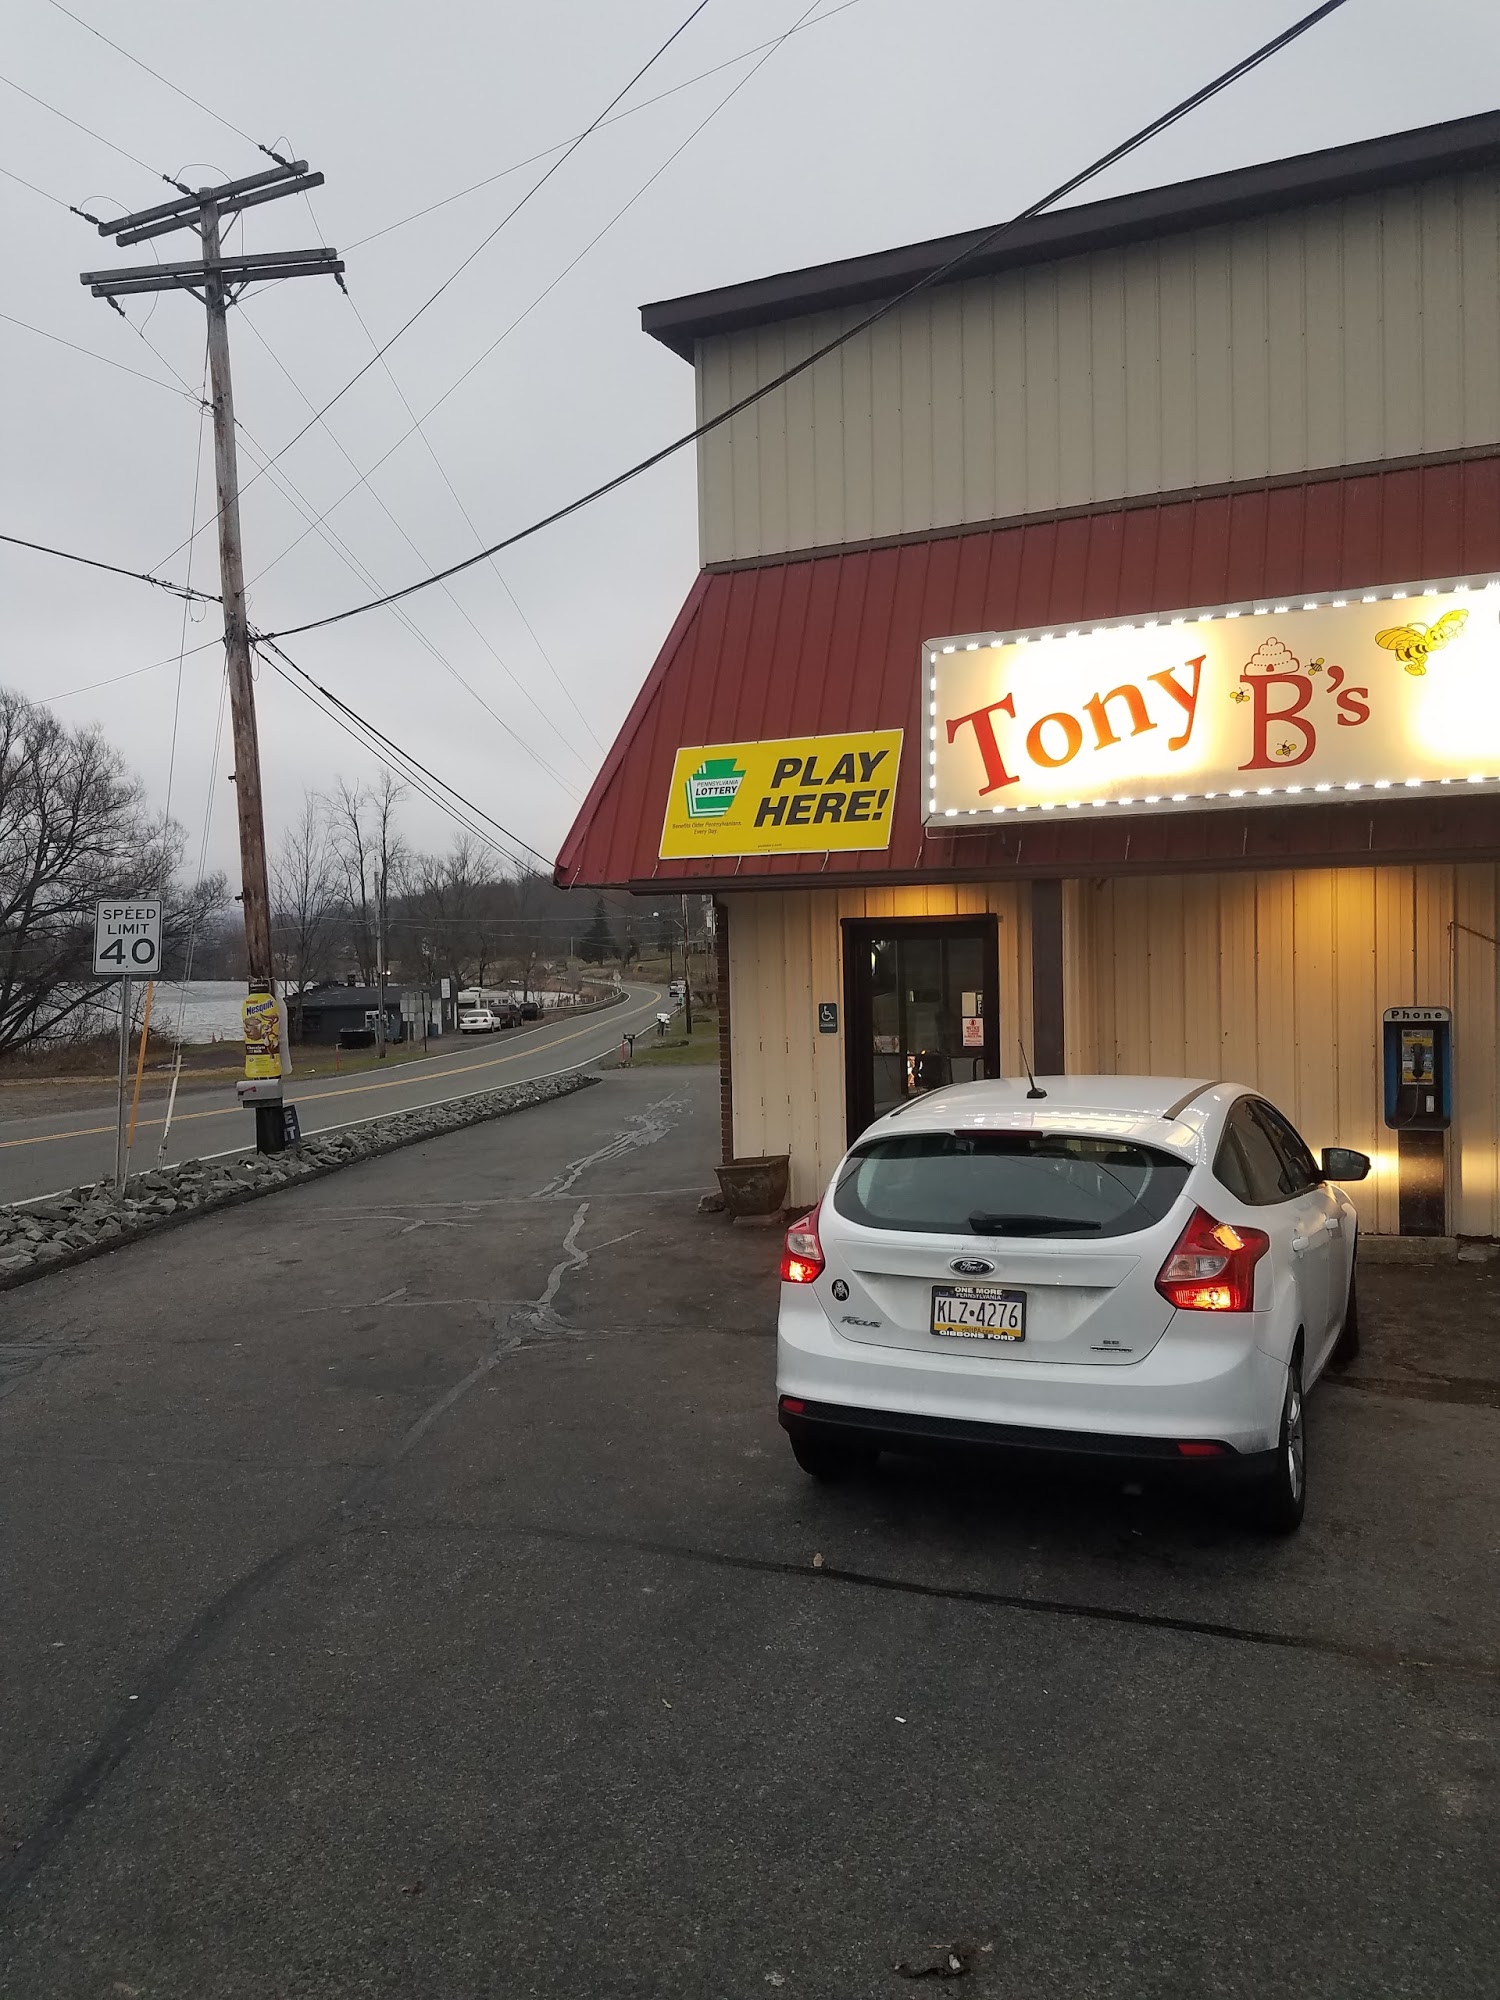 Tony B's convenience store